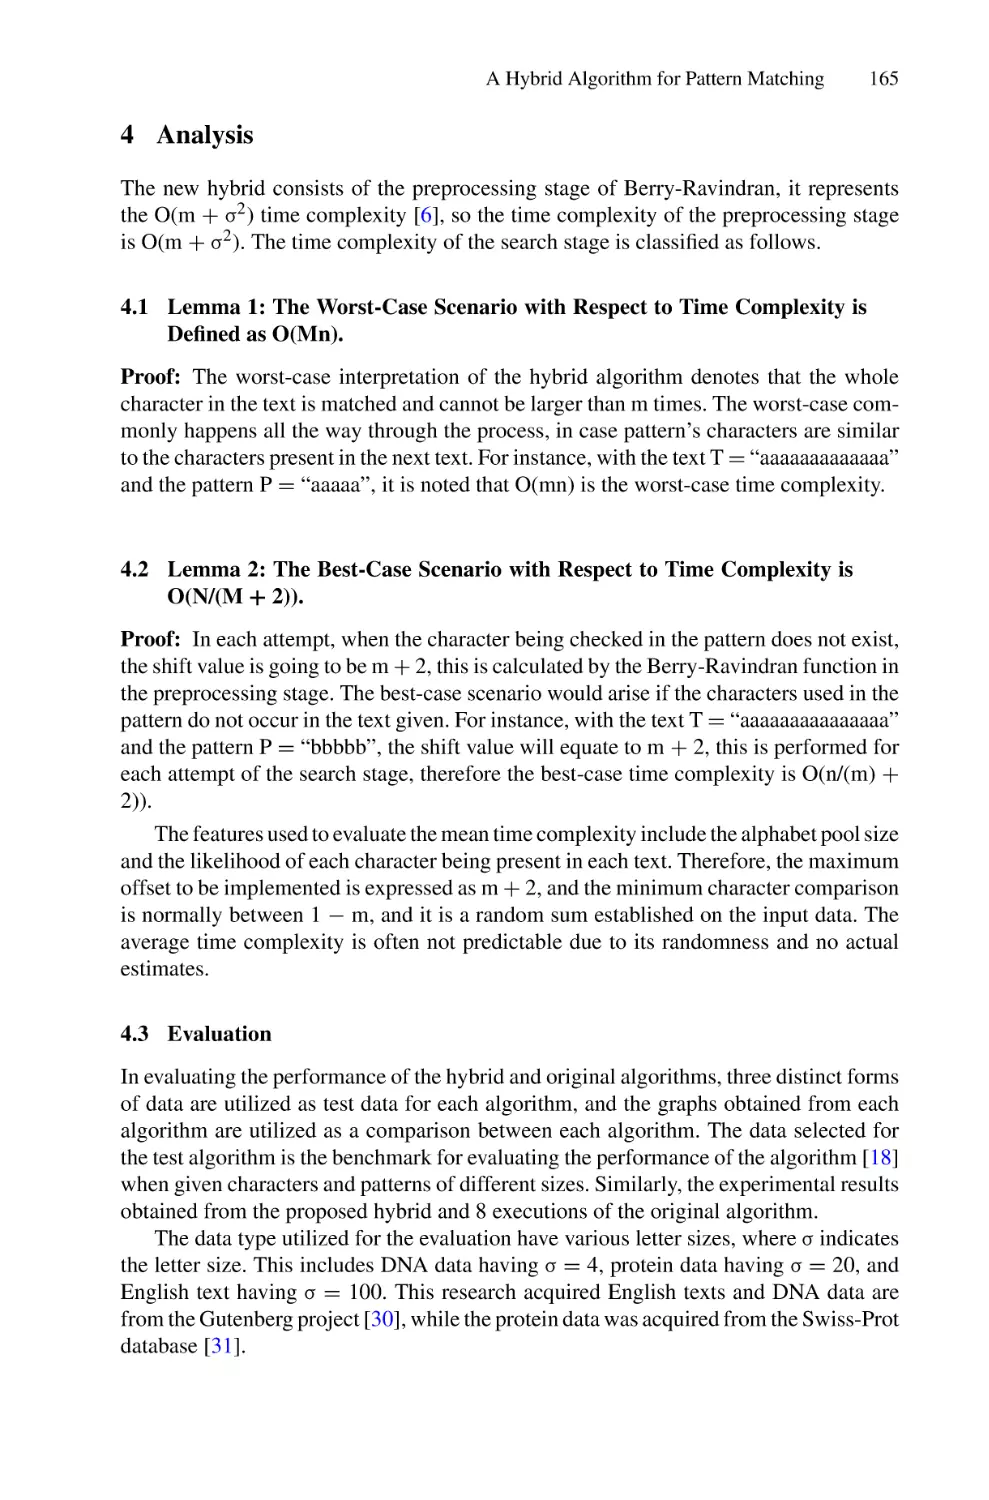 4 Analysis
4.1 Lemma 1
4.2 Lemma 2
4.3 Evaluation